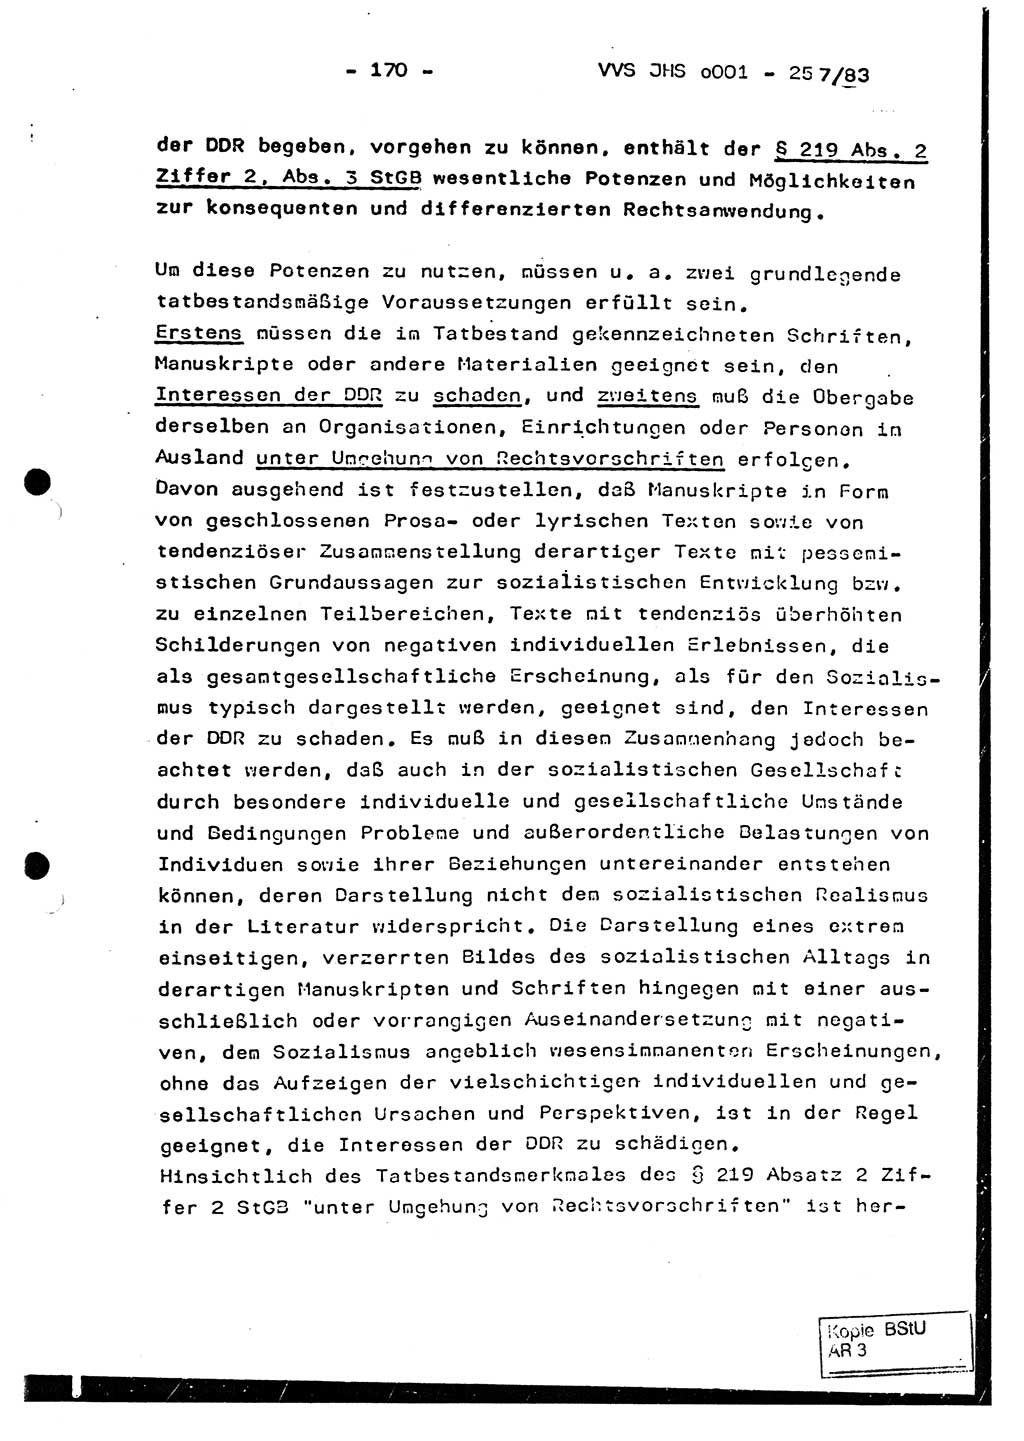 Dissertation, Oberst Helmut Lubas (BV Mdg.), Oberstleutnant Manfred Eschberger (HA IX), Oberleutnant Hans-Jürgen Ludwig (JHS), Ministerium für Staatssicherheit (MfS) [Deutsche Demokratische Republik (DDR)], Juristische Hochschule (JHS), Vertrauliche Verschlußsache (VVS) o001-257/83, Potsdam 1983, Seite 170 (Diss. MfS DDR JHS VVS o001-257/83 1983, S. 170)